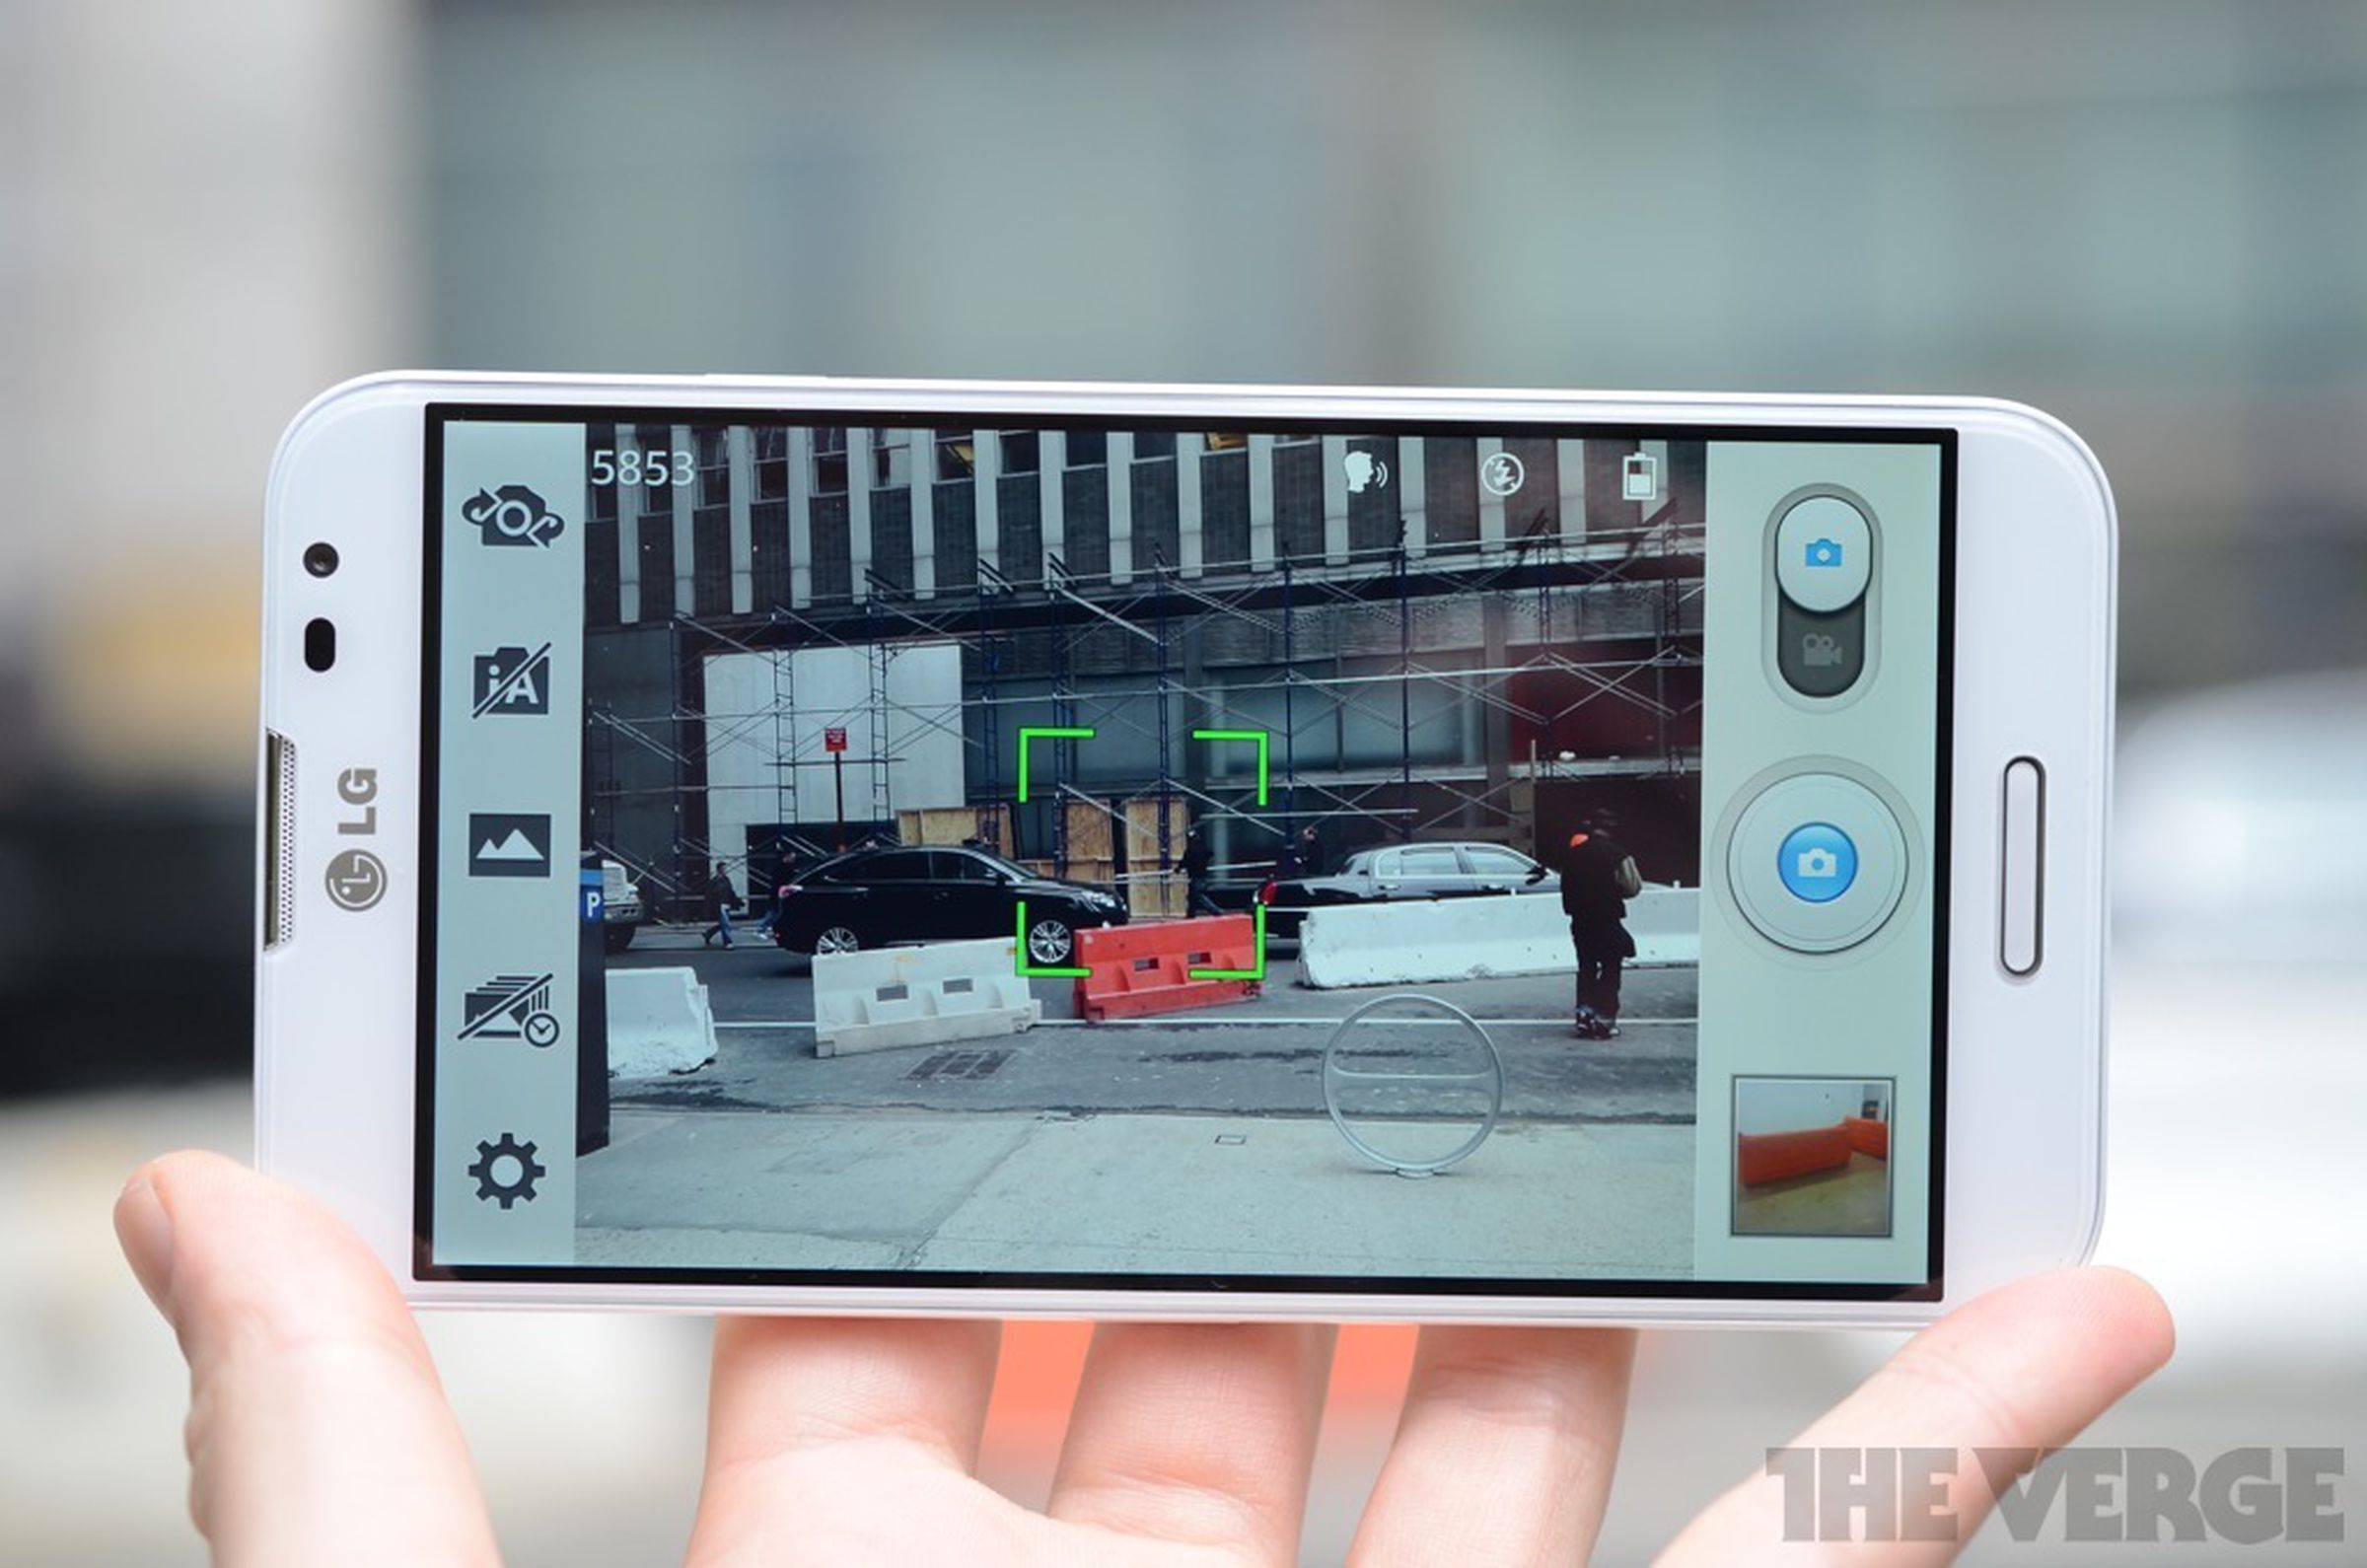 LG Optimus G Pro pictures